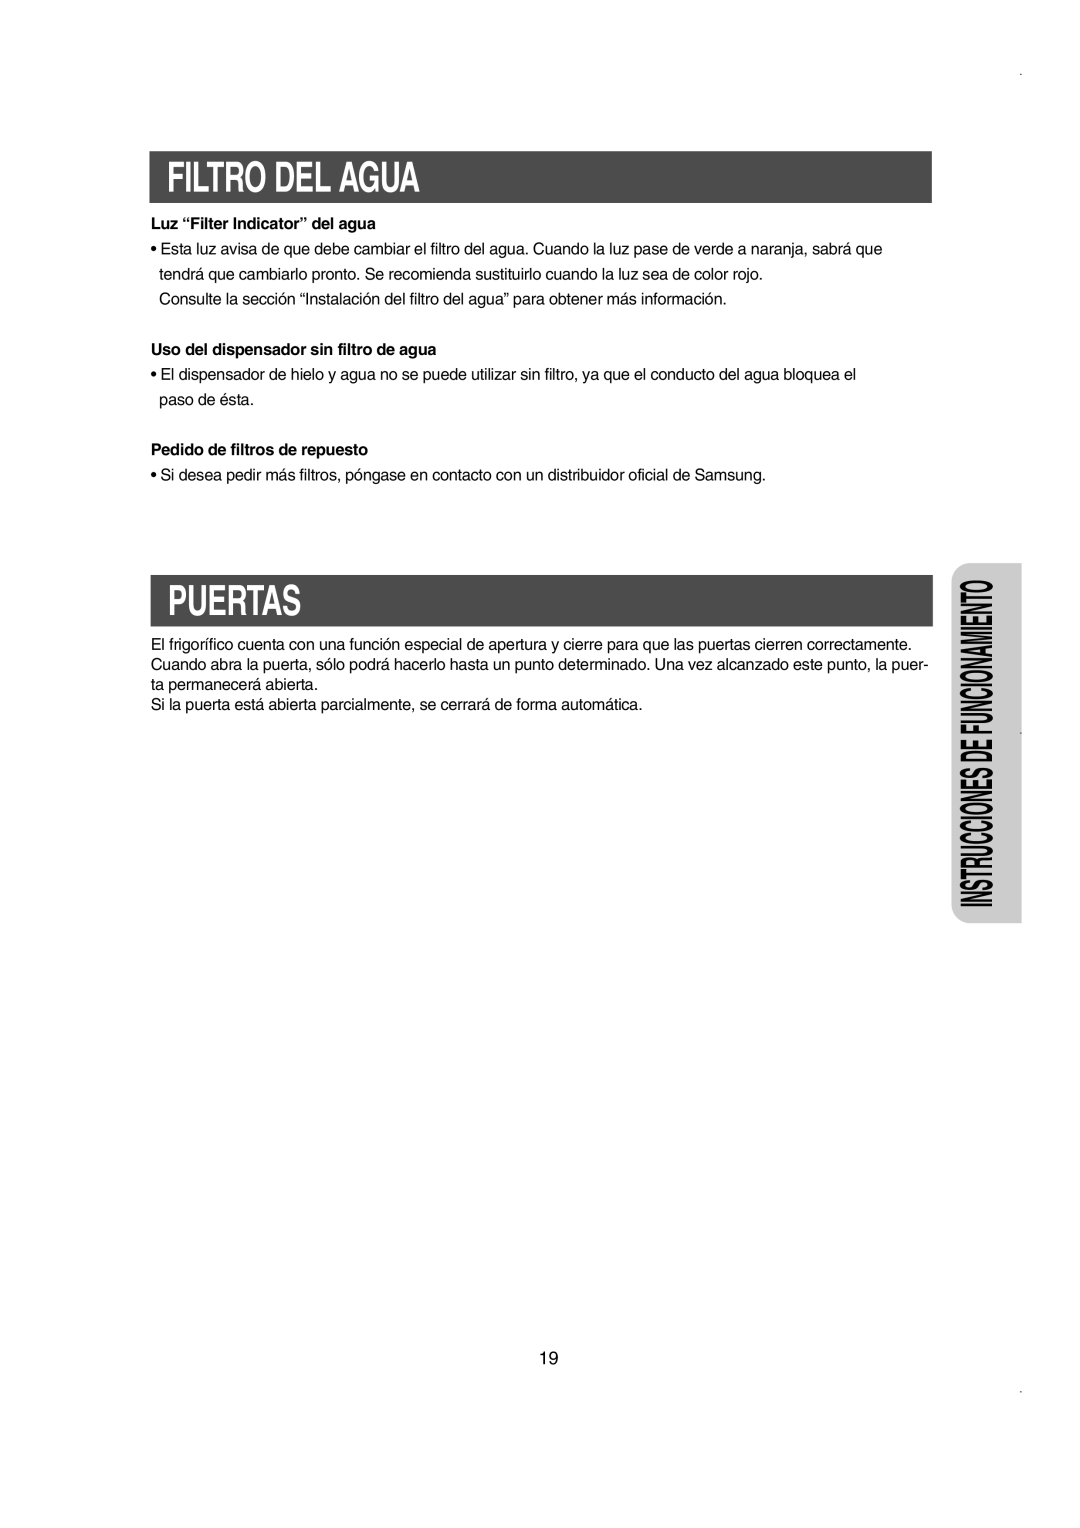 Samsung RS21NCSW1/XES manual Filtro Del Agua, Puertas, Instrucciones De Funcionamiento, Luz “Filter Indicator” del agua 